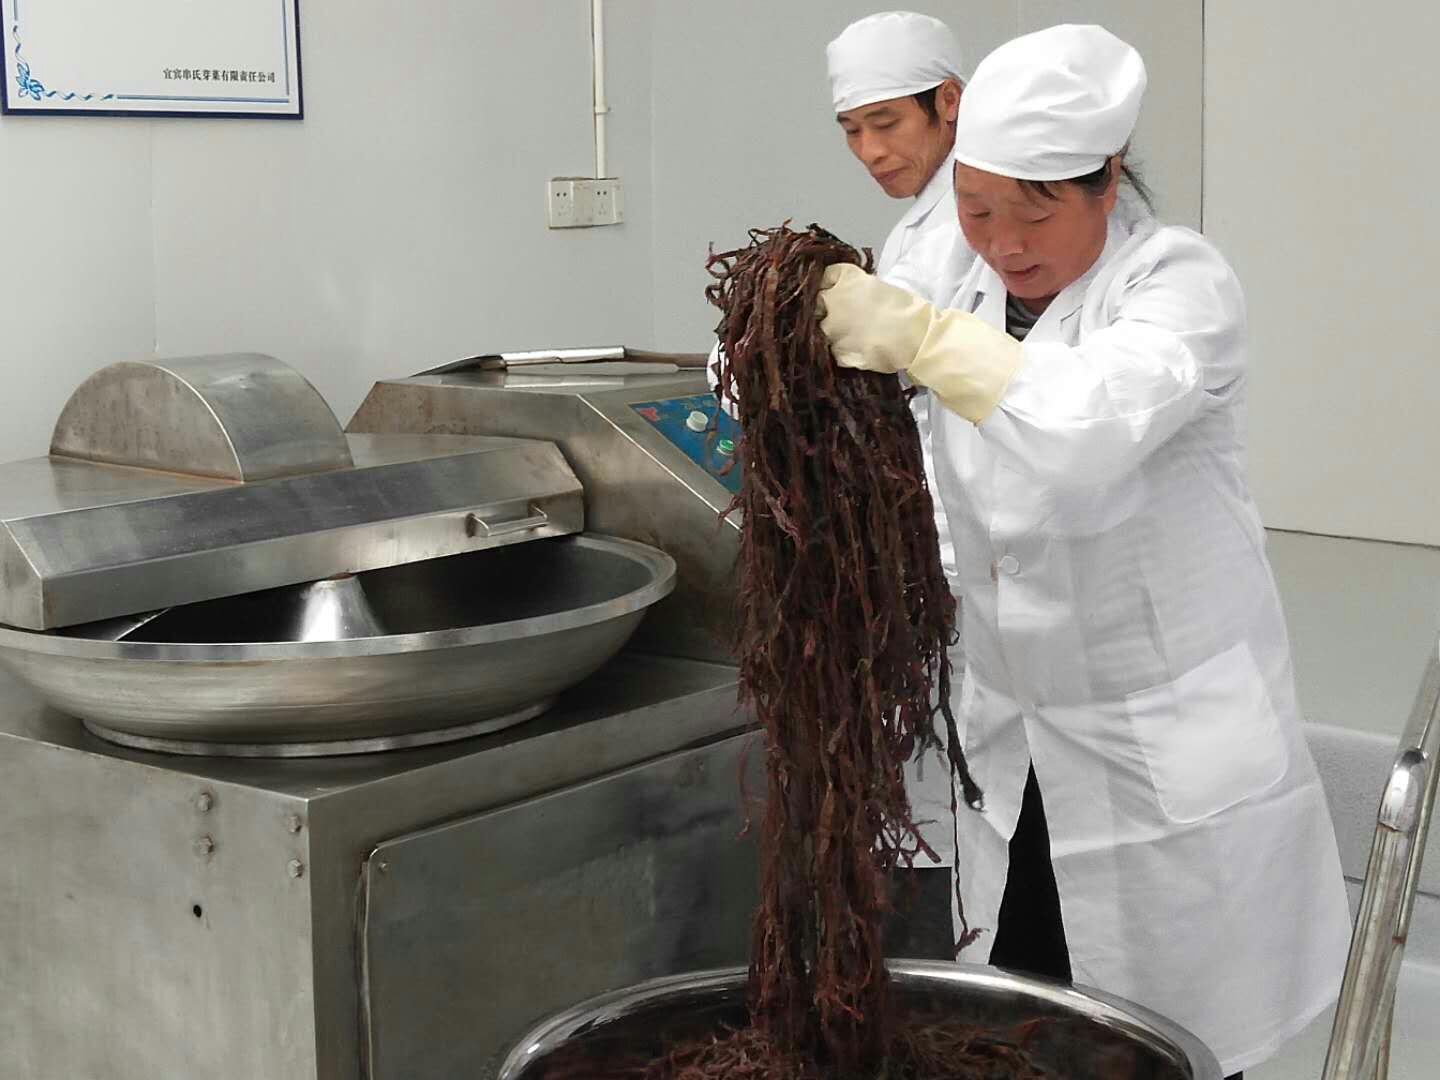 串氏芽菜，宜宾特色旅游商品！家传腌制技艺被列入非物质保护项目